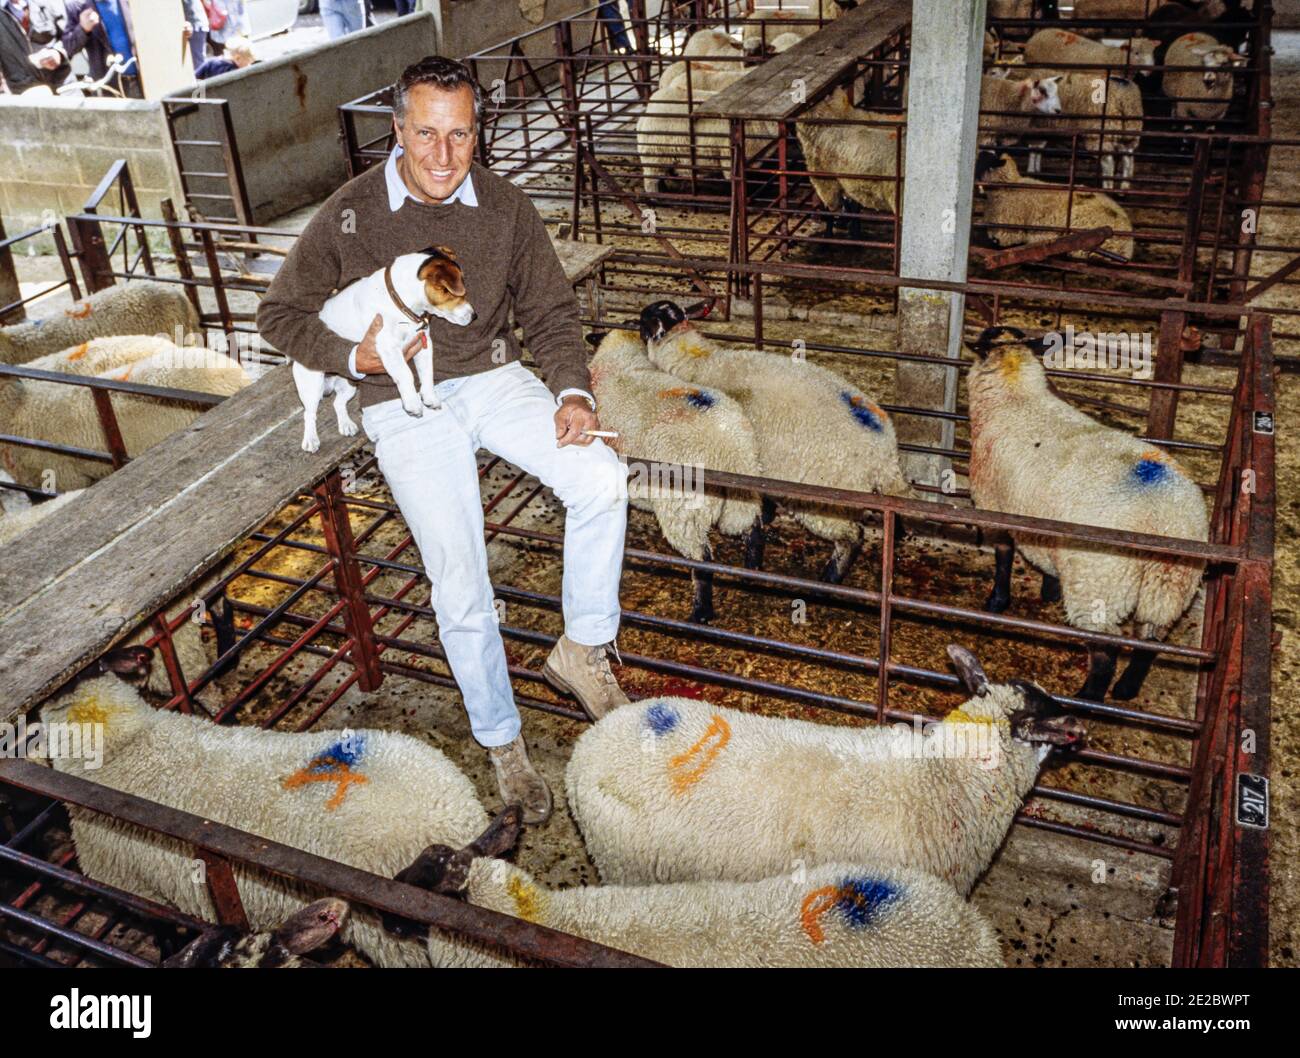 HERTFORD - INGHILTERRA 1986. Frederick McCarthy Forsyth (romanziere) in posa per la macchina fotografica durante la visita Hertford mercato delle pecore e del bestiame nel 1986. Foto di G Foto Stock